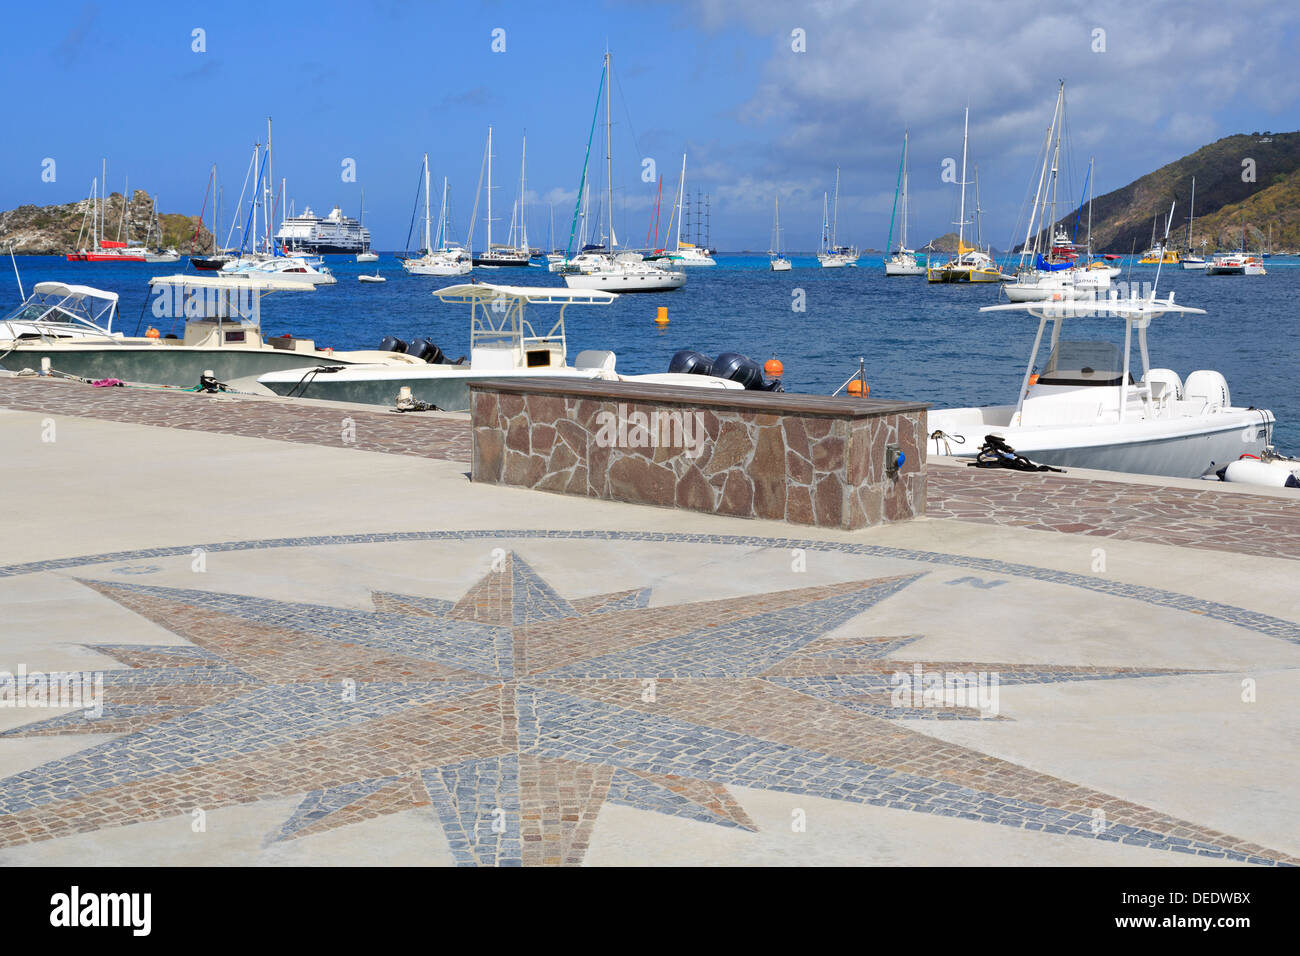 La Pointe à Gustavia, le port de Gustavia, Saint Barthelemy (St. Barth), les îles sous le vent, Antilles, Caraïbes, Amérique Centrale Banque D'Images